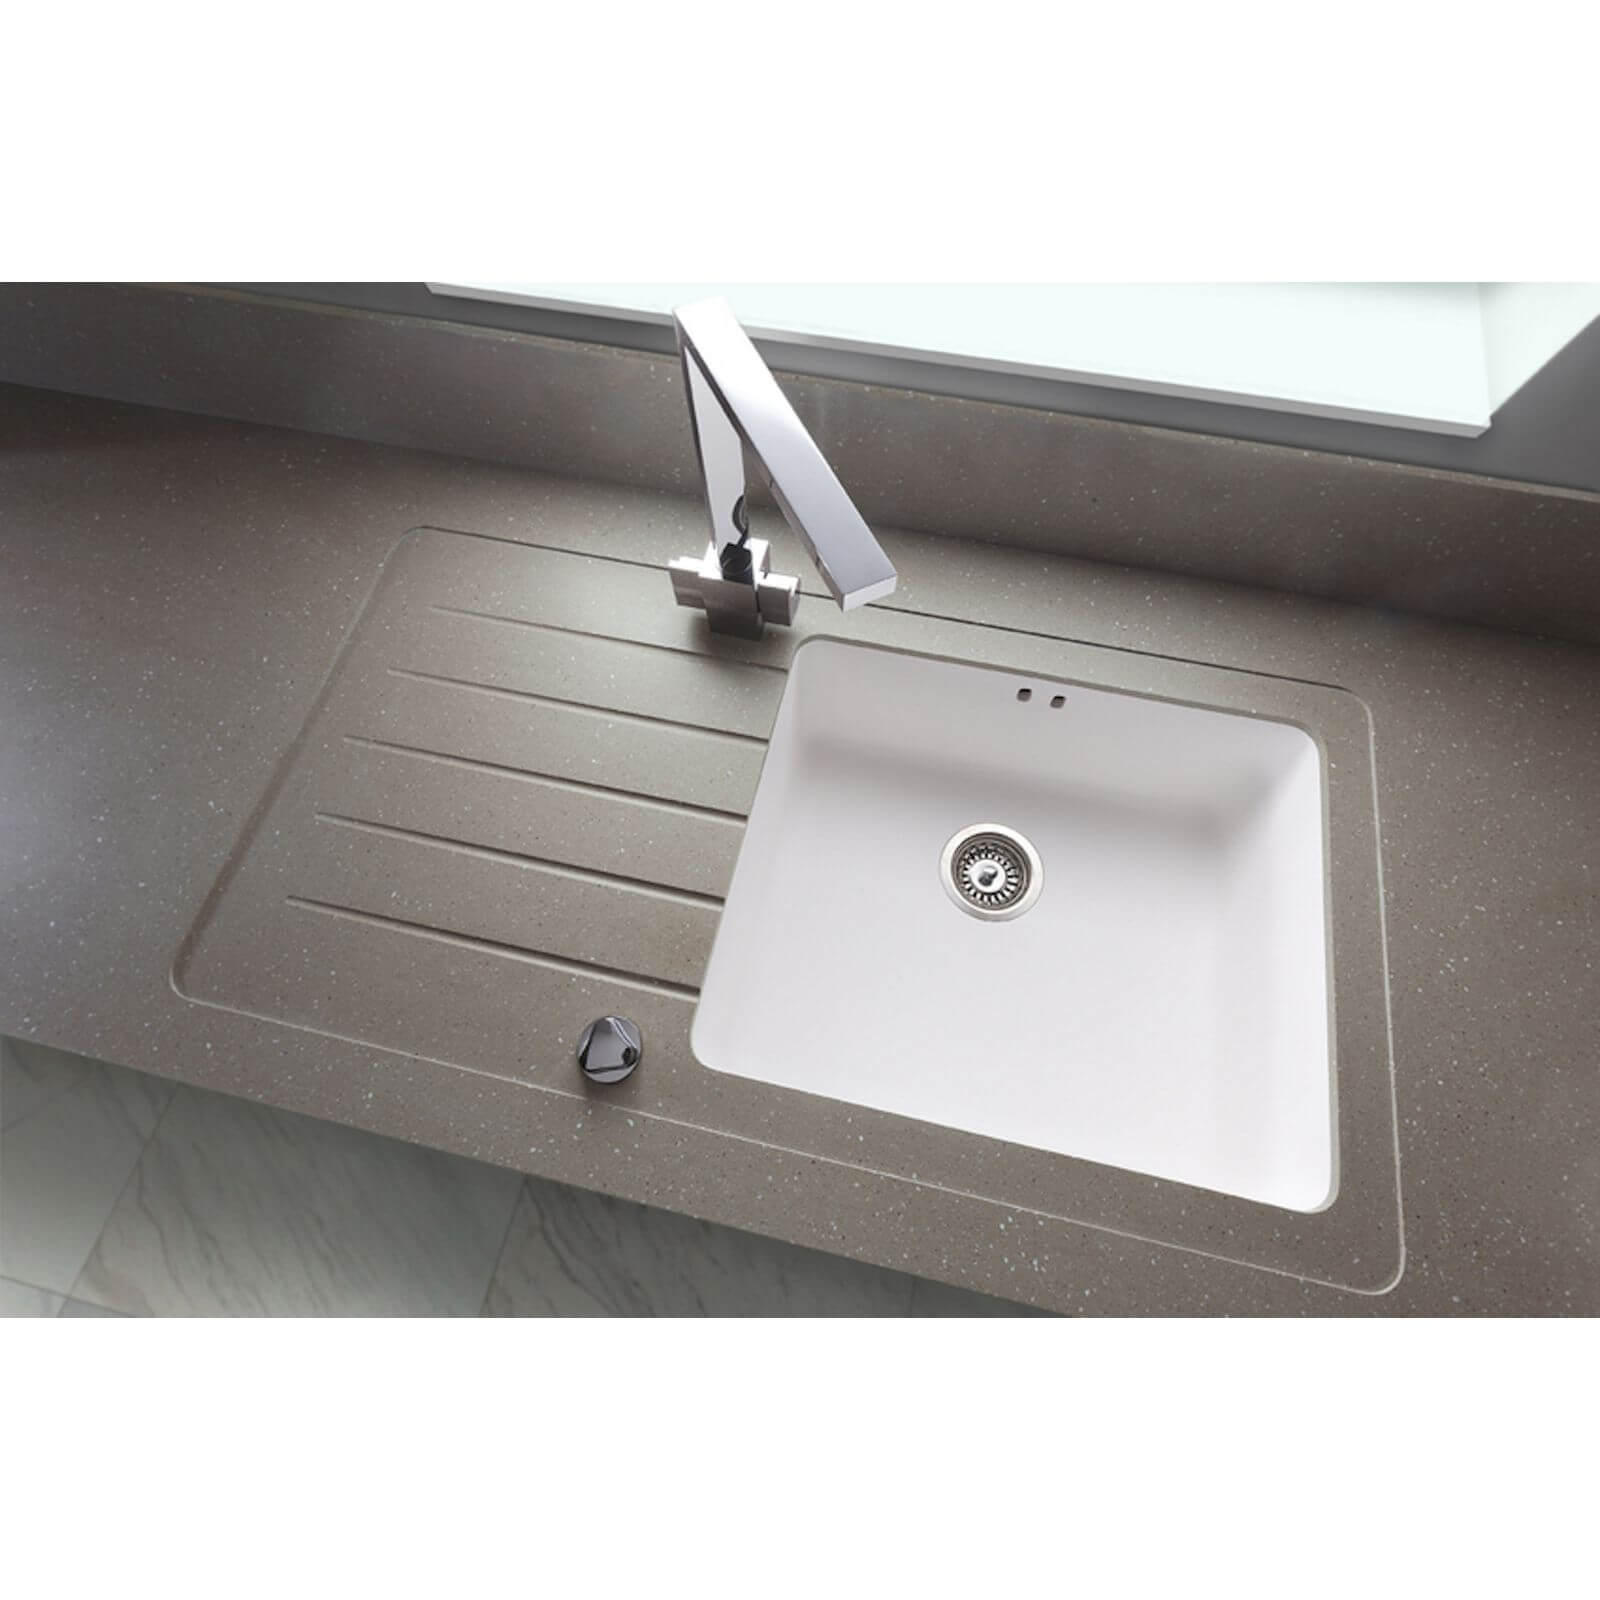 Maia Brazilian Greige Kitchen Sink Worktop - 1.5 Designer Left Hand Bowl - 3600 x 650 x 28mm